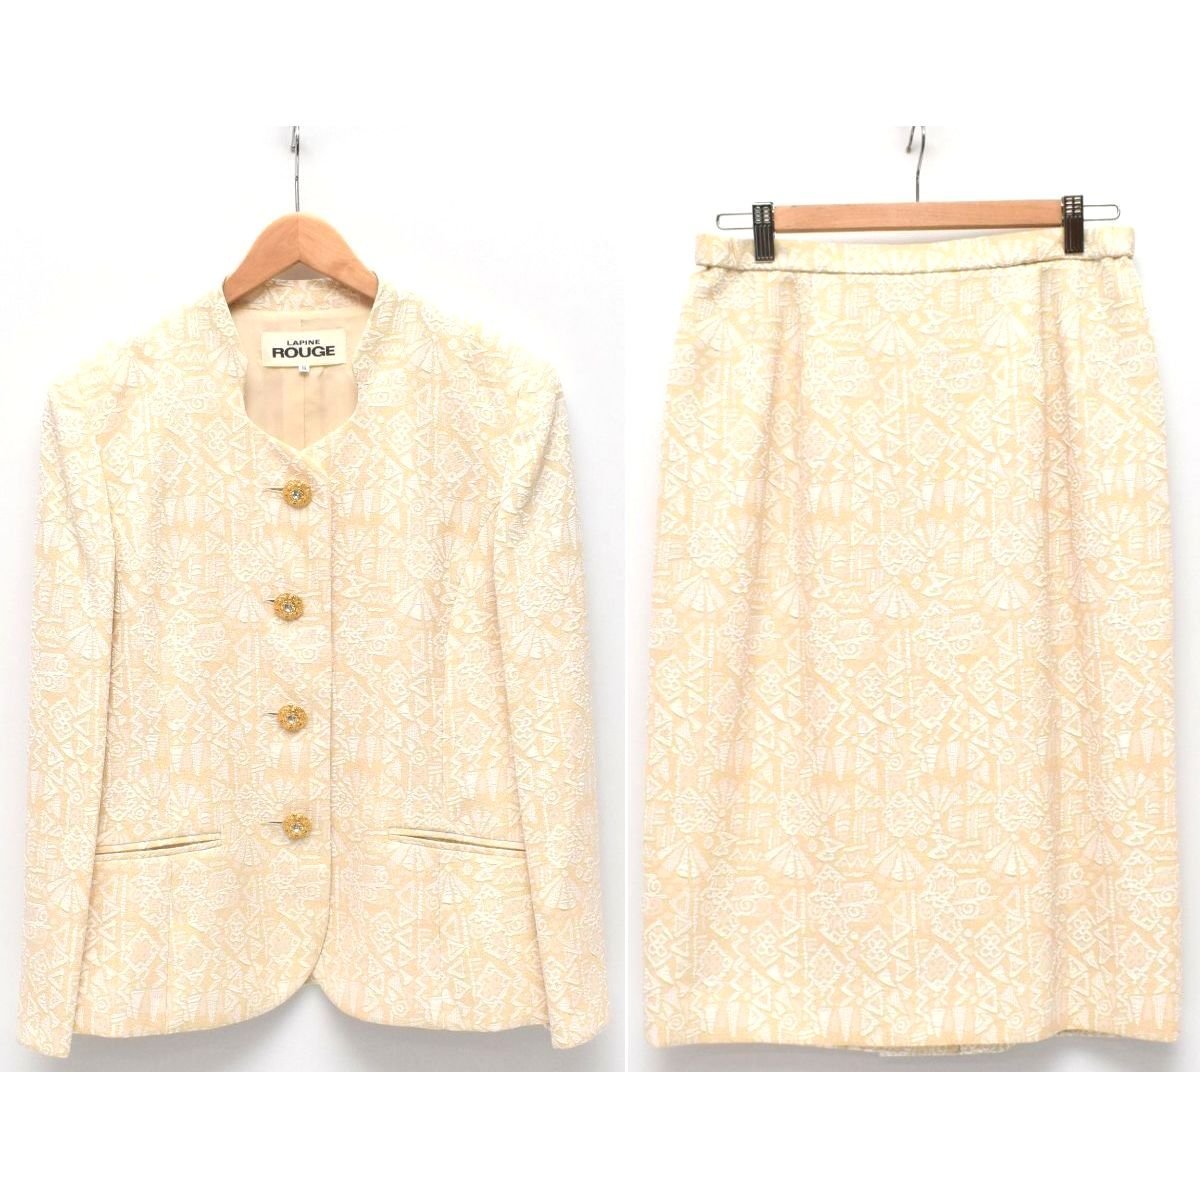 LAPINE ROUGE ラピーヌルージュ ジャケット スカート スーツ セットアップ SIZE:13 大きいサイズ [H106713]